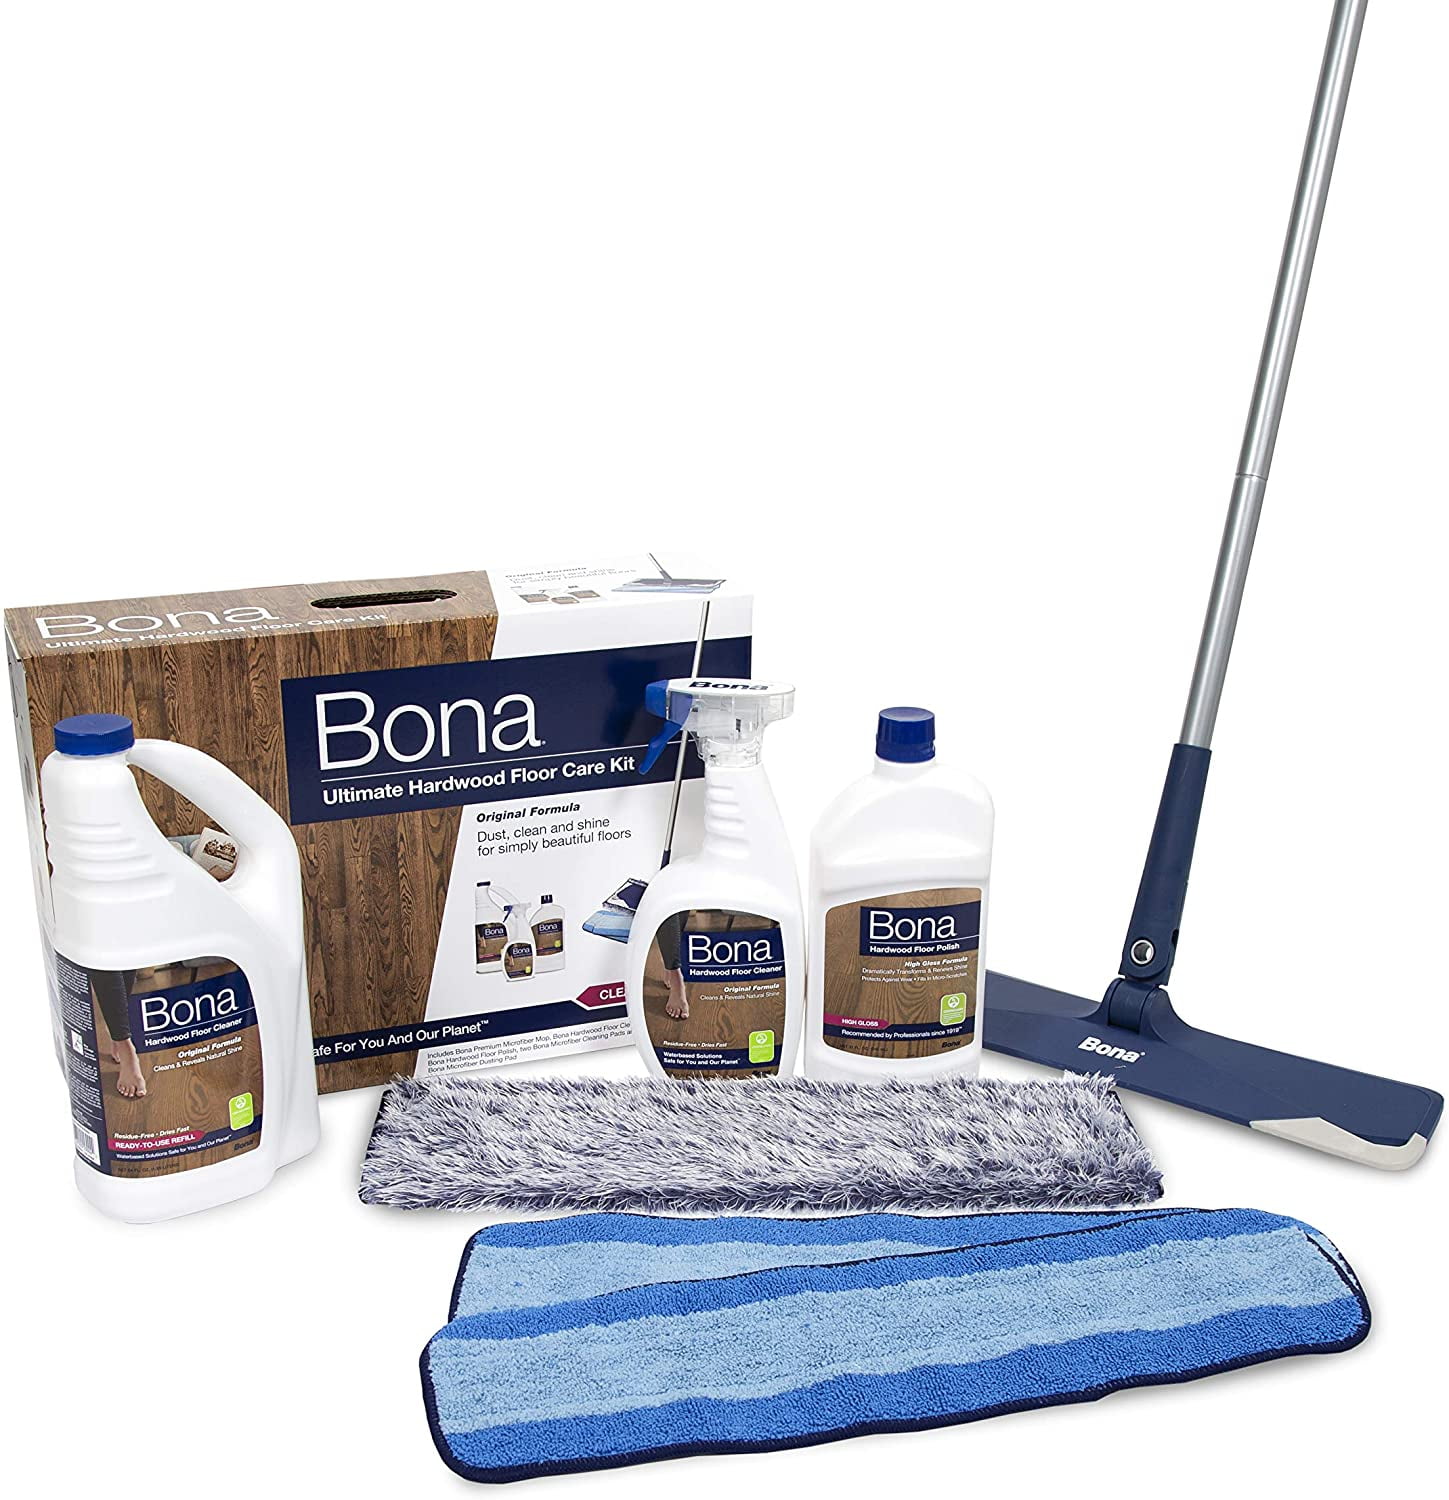 Bona Hardwood Floor Ultimate Care Kit, Is Bona Good For Hardwood Floors